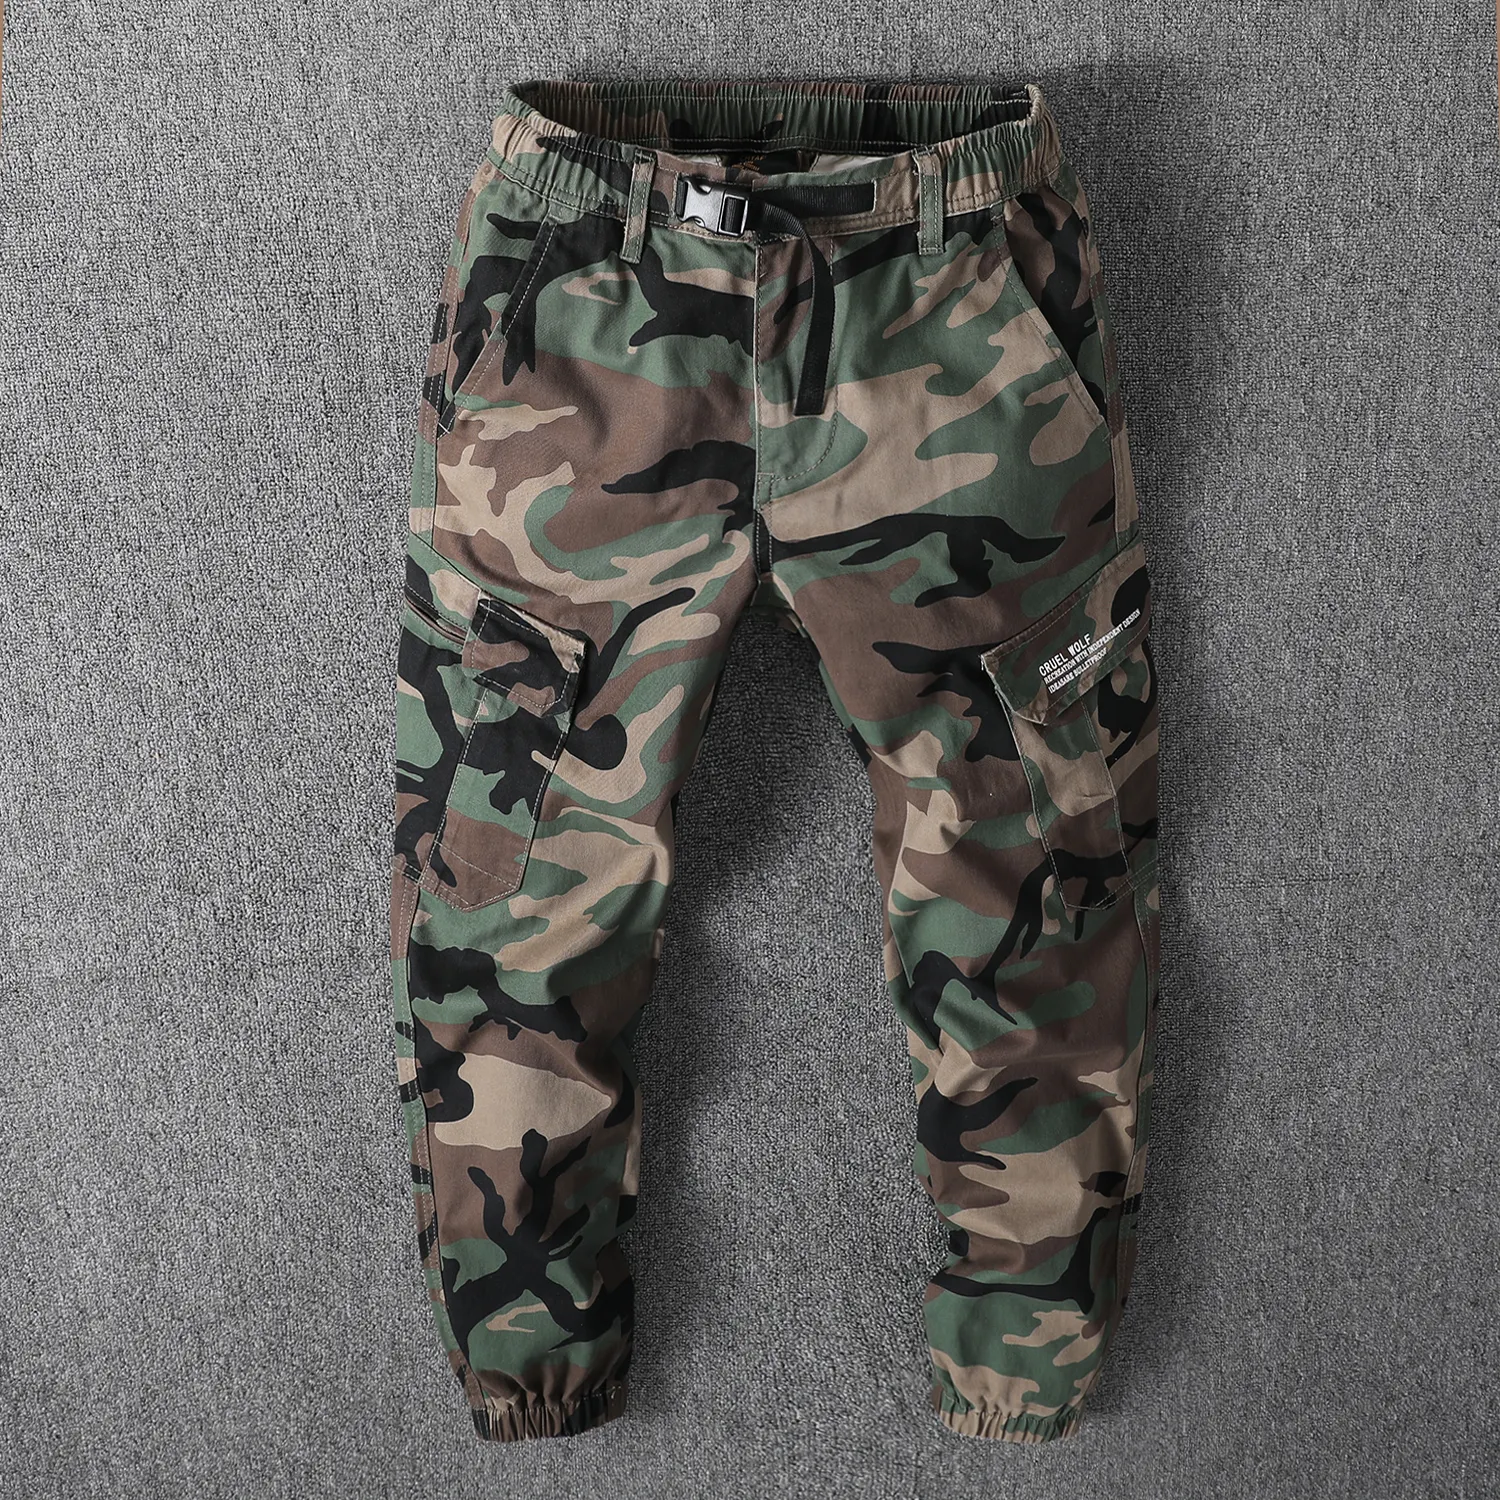 Hot selling men's camouflage pants for breathability tactical uniform men pants sweatpants